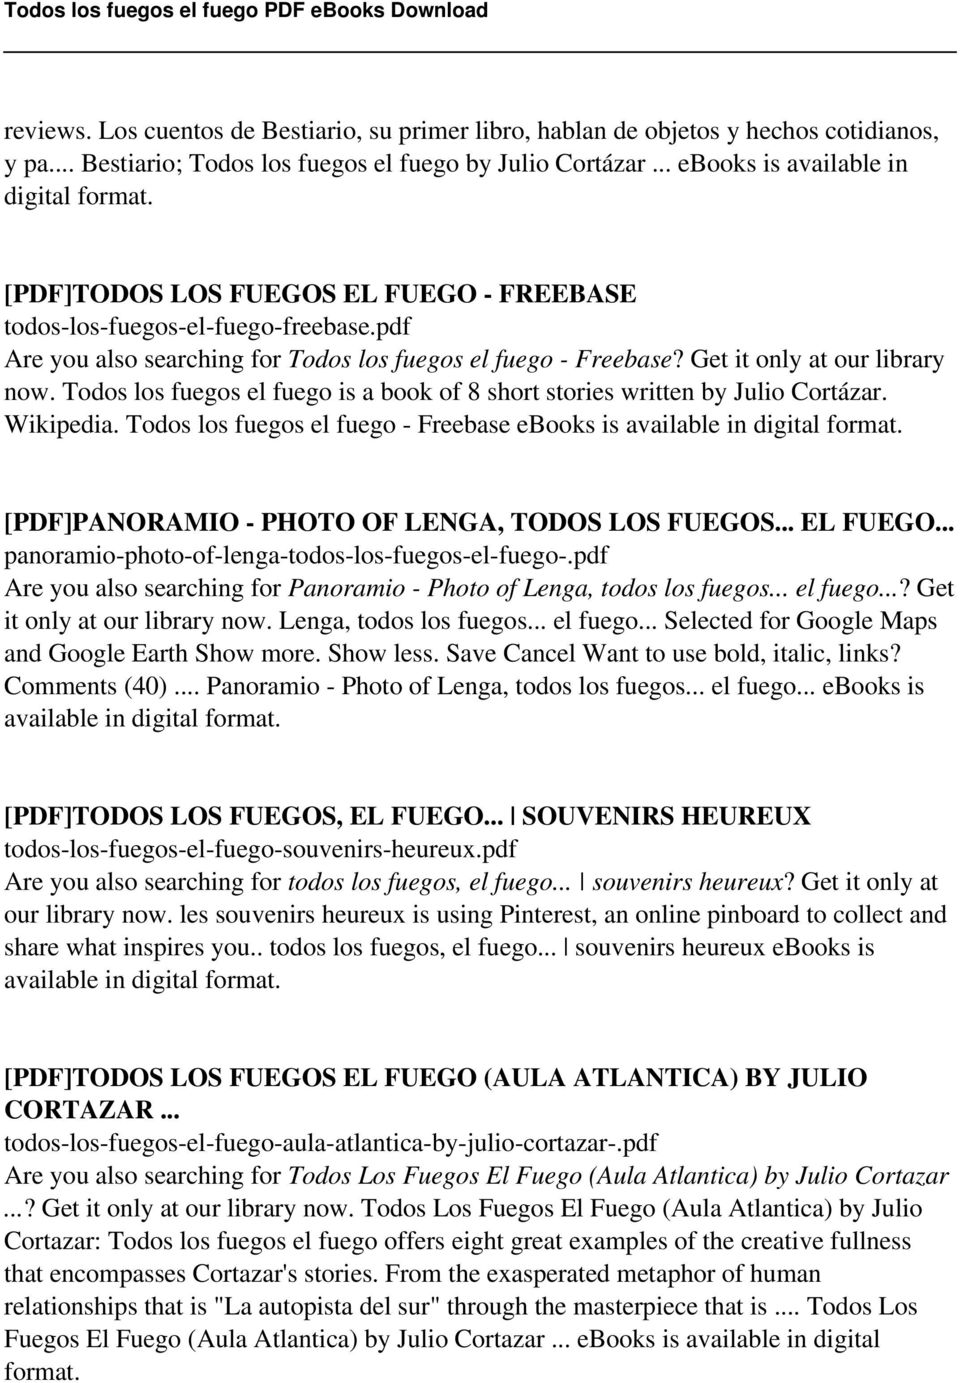 Todos los fuegos el fuego is a book of 8 short stories written by Julio Cortázar. Wikipedia. Todos los fuegos el fuego - Freebase ebooks is available in digital format.